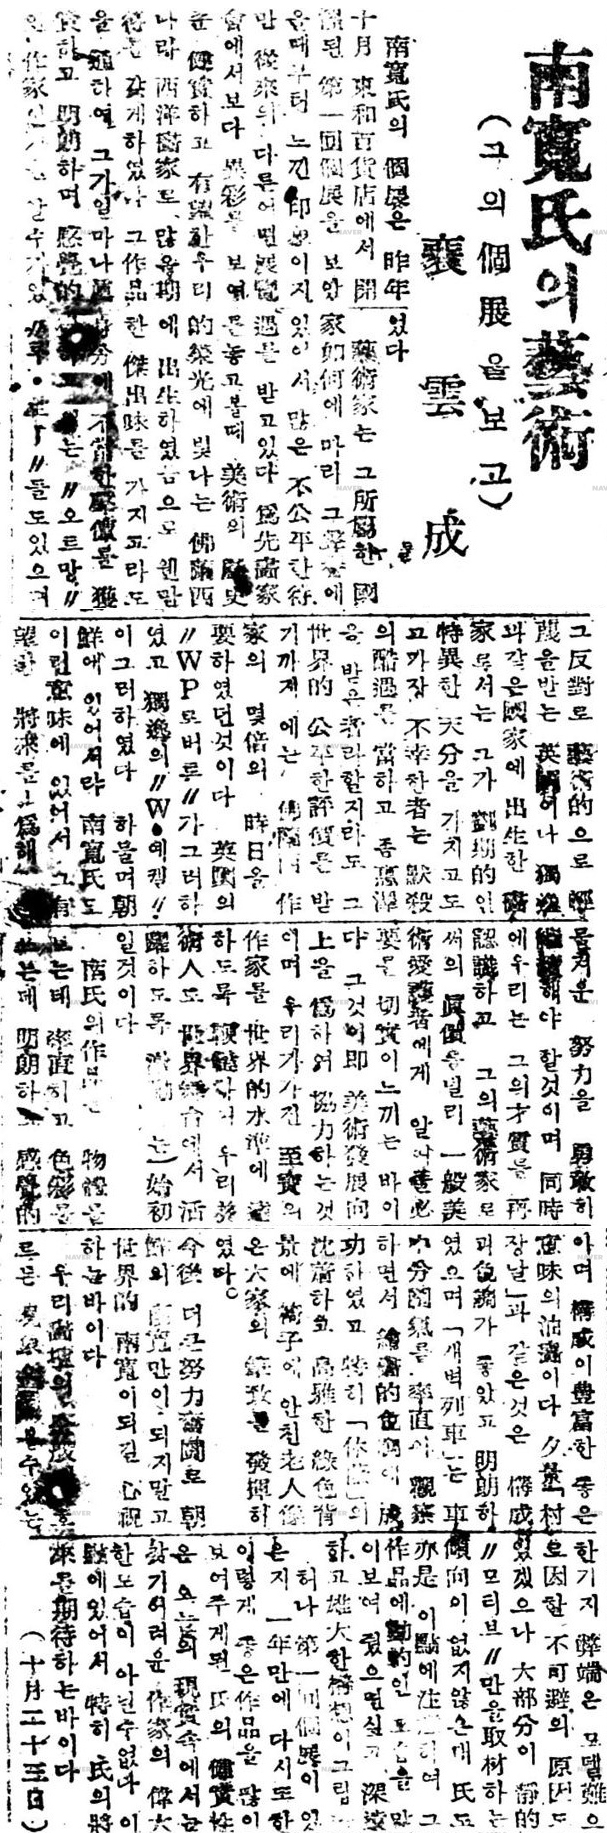 19471026경향신문.jpg